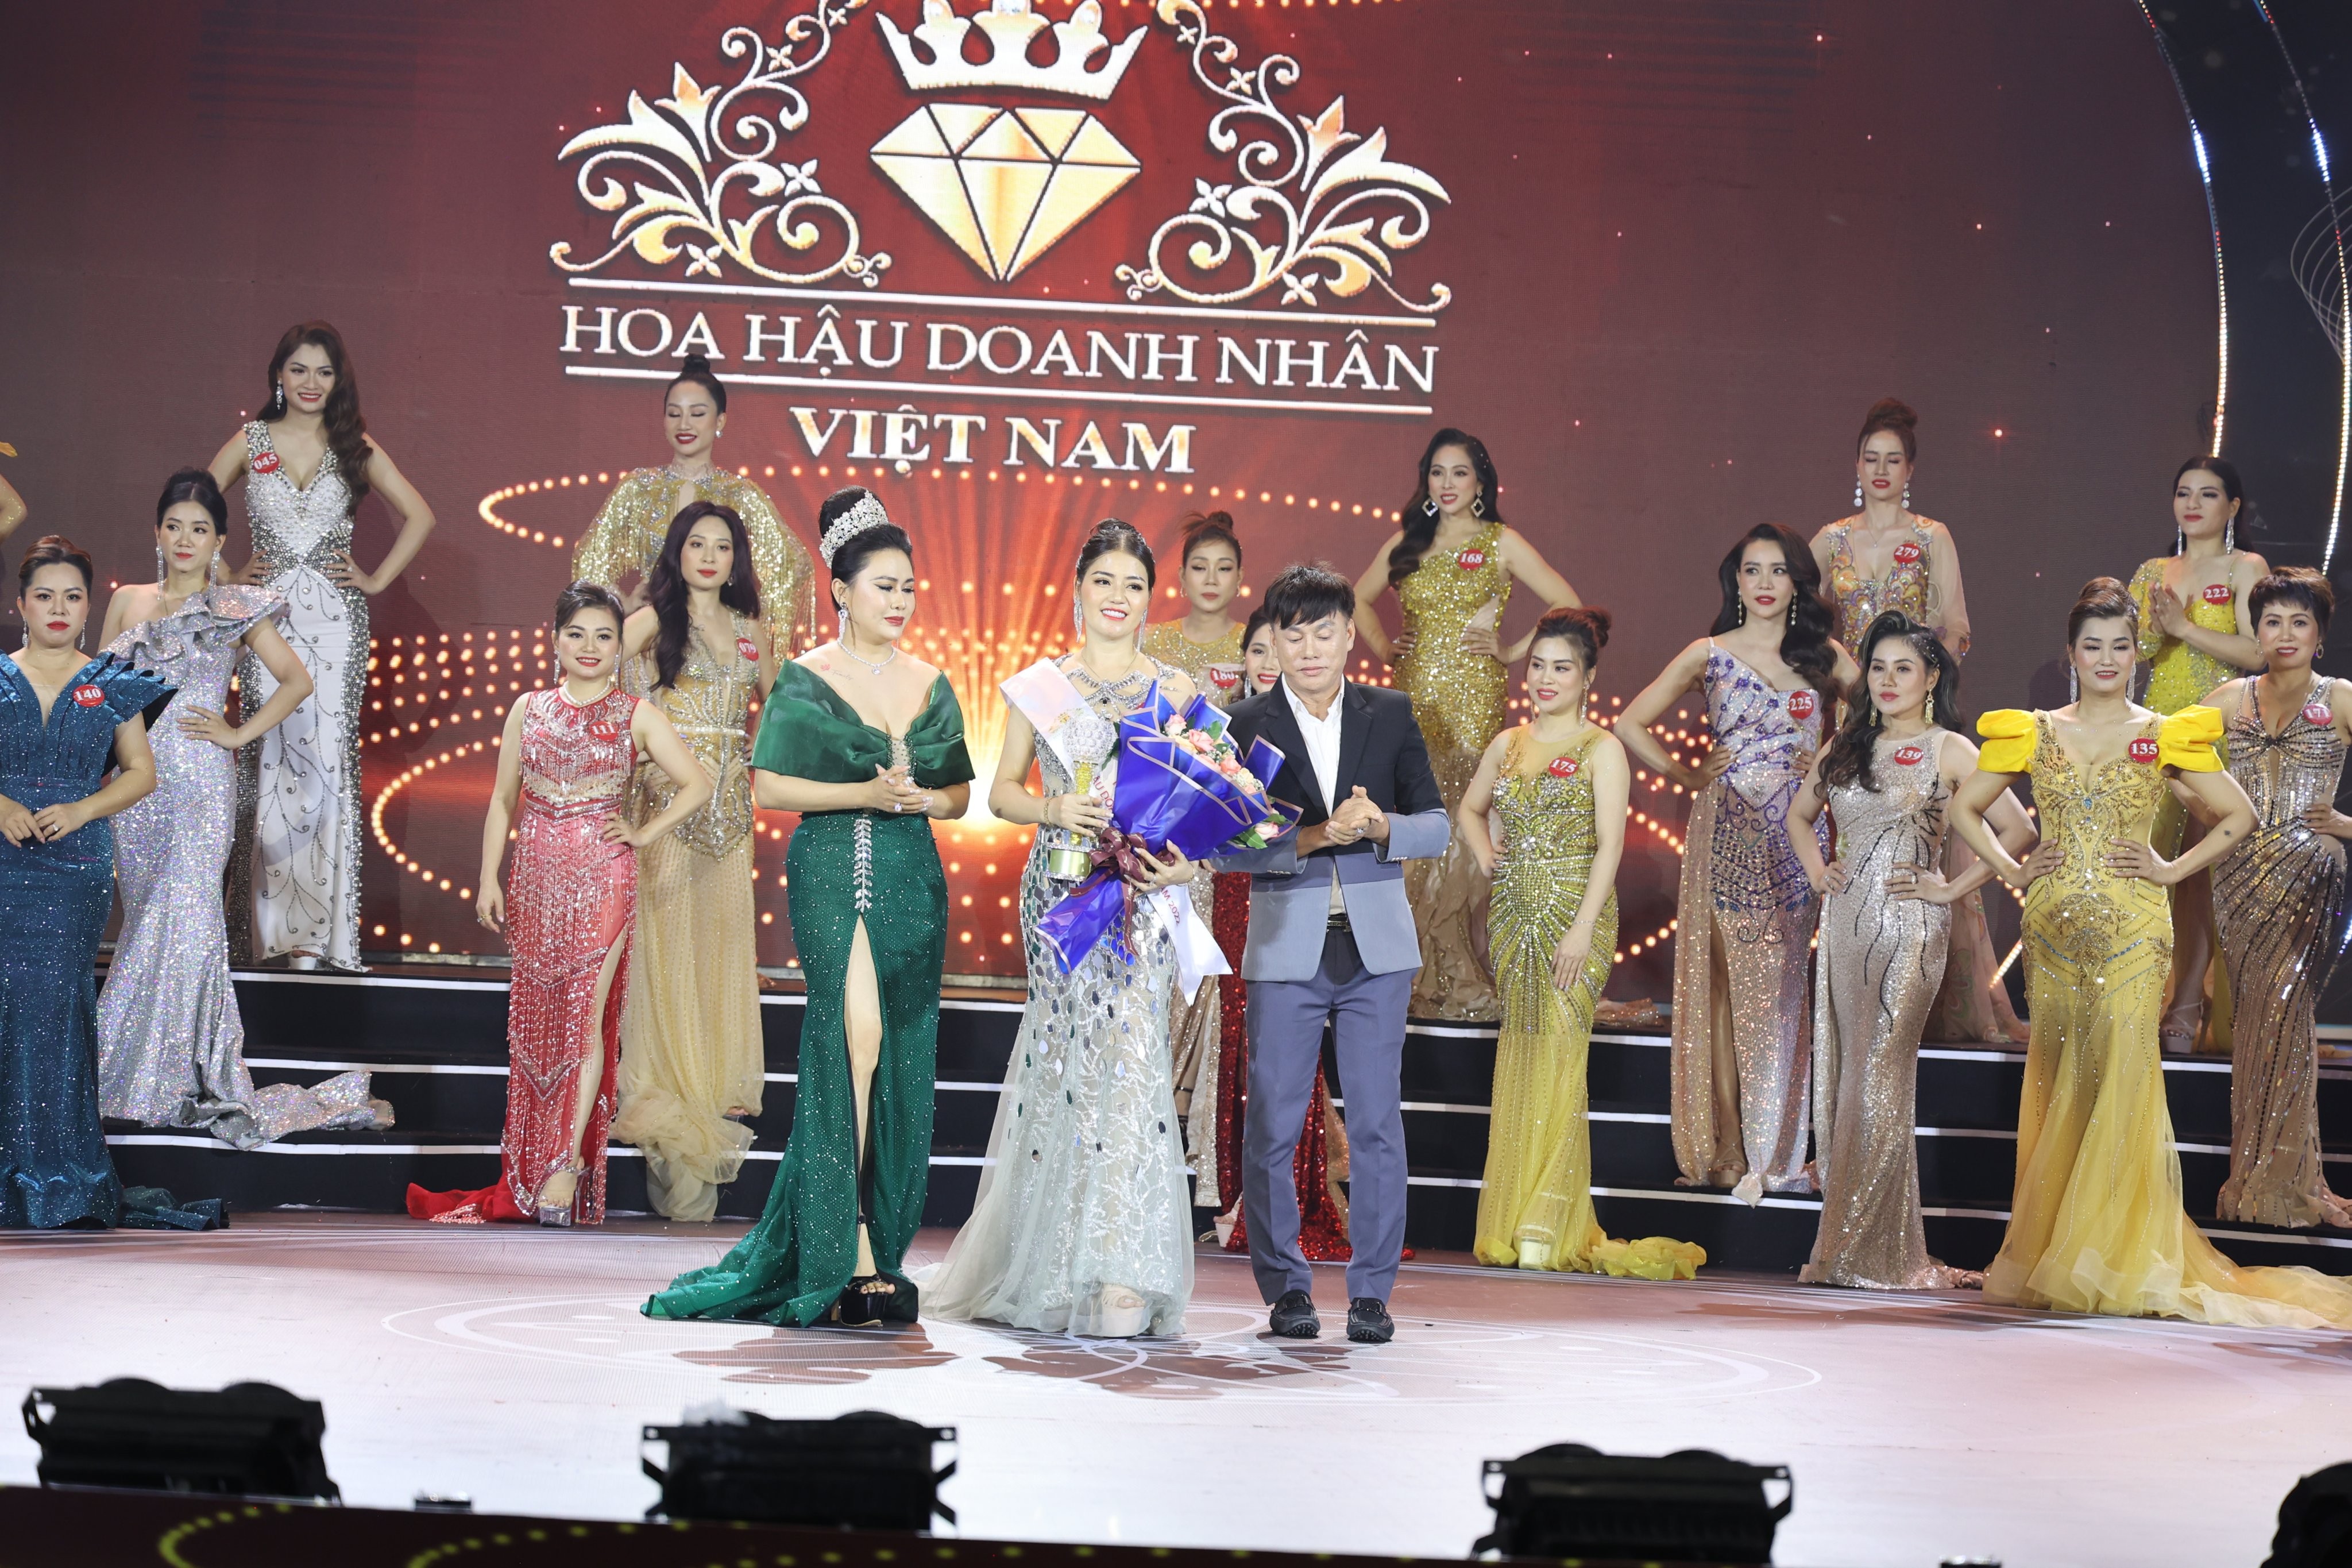 Doanh nhân Nguyễn Thị Hồng đạt danh hiệu Người đẹp dạ hội Hoa hậu Doanh nhân Việt Nam 2022